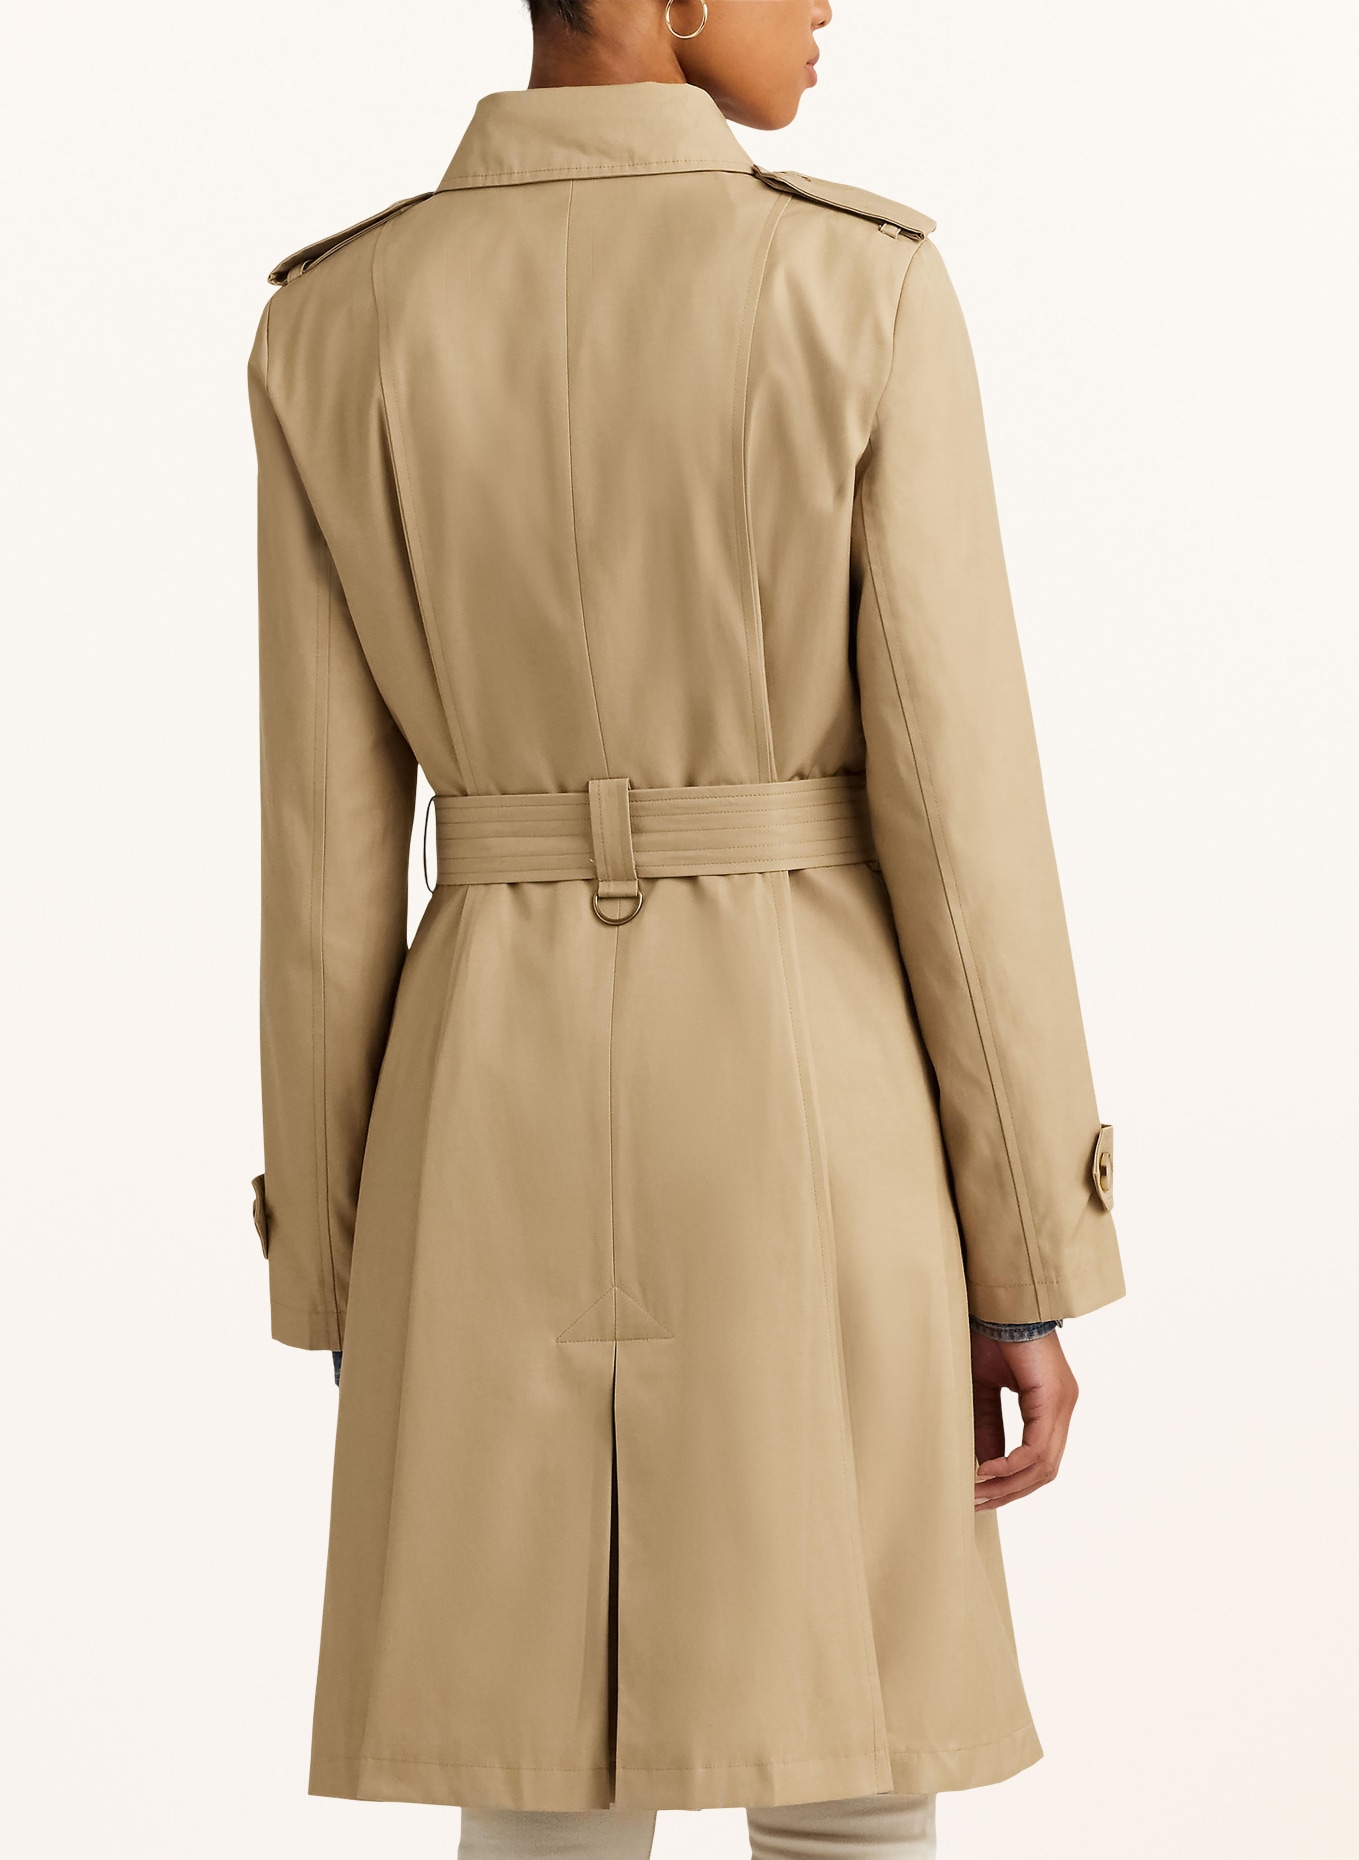 LAUREN RALPH LAUREN Trench coat, Color: BEIGE (Image 3)